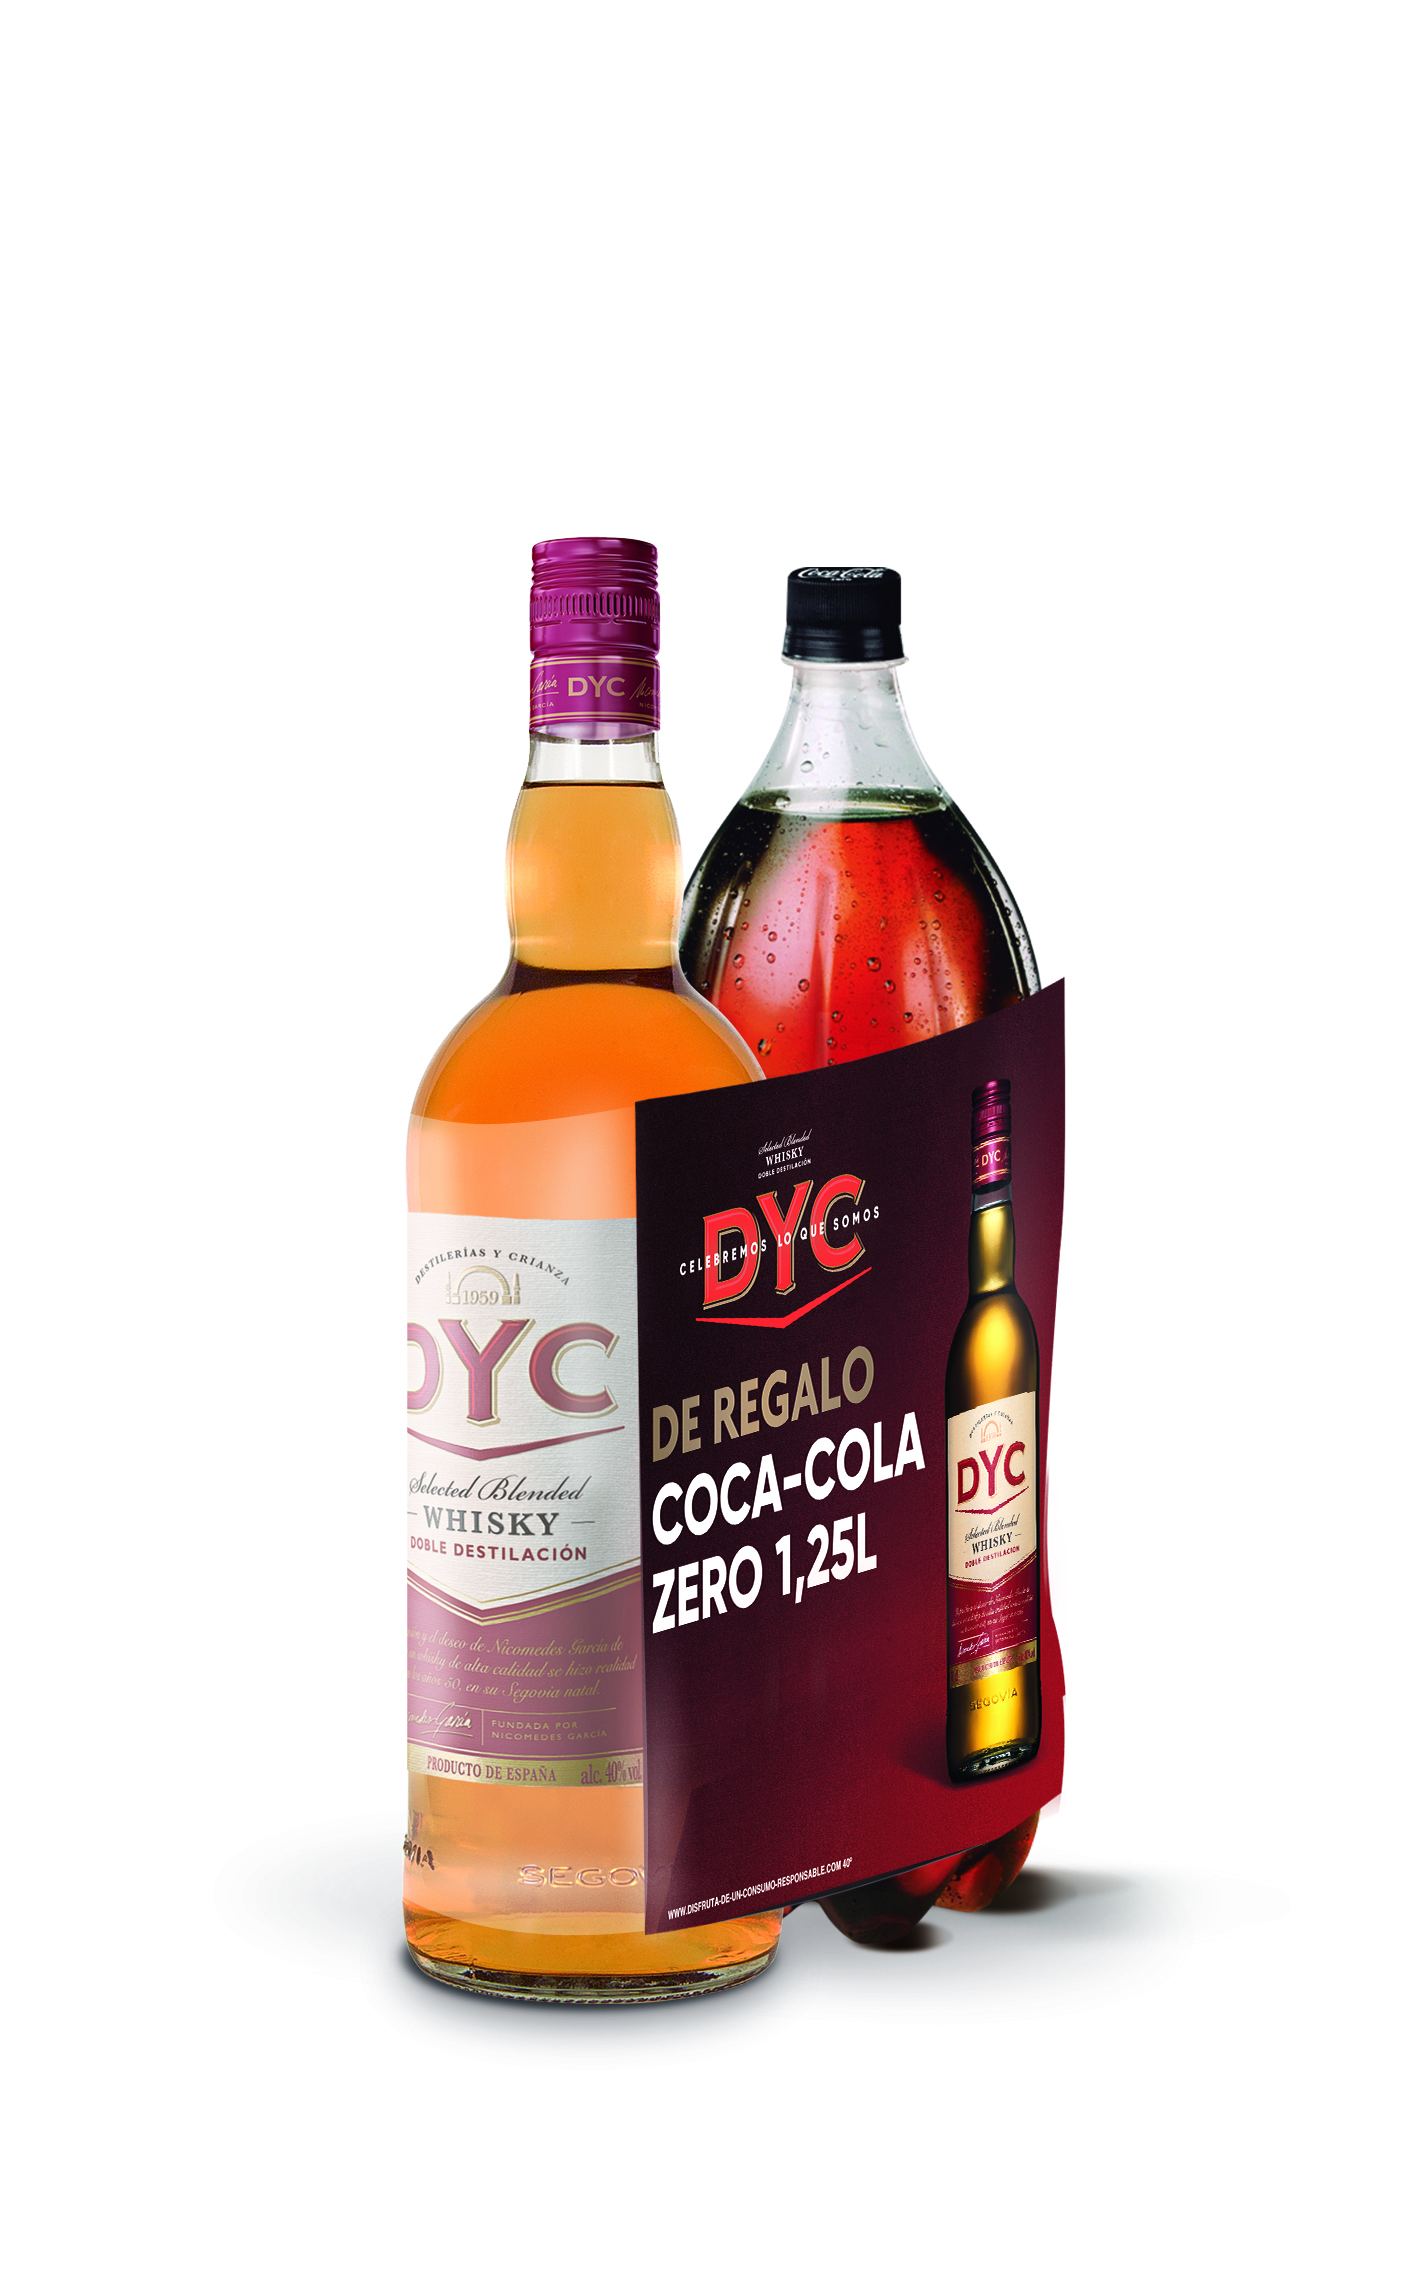 Comprar Whisky Pack DYC 5 Años 1L + Coca Cola Zero 1,25L 】 barato online🍷